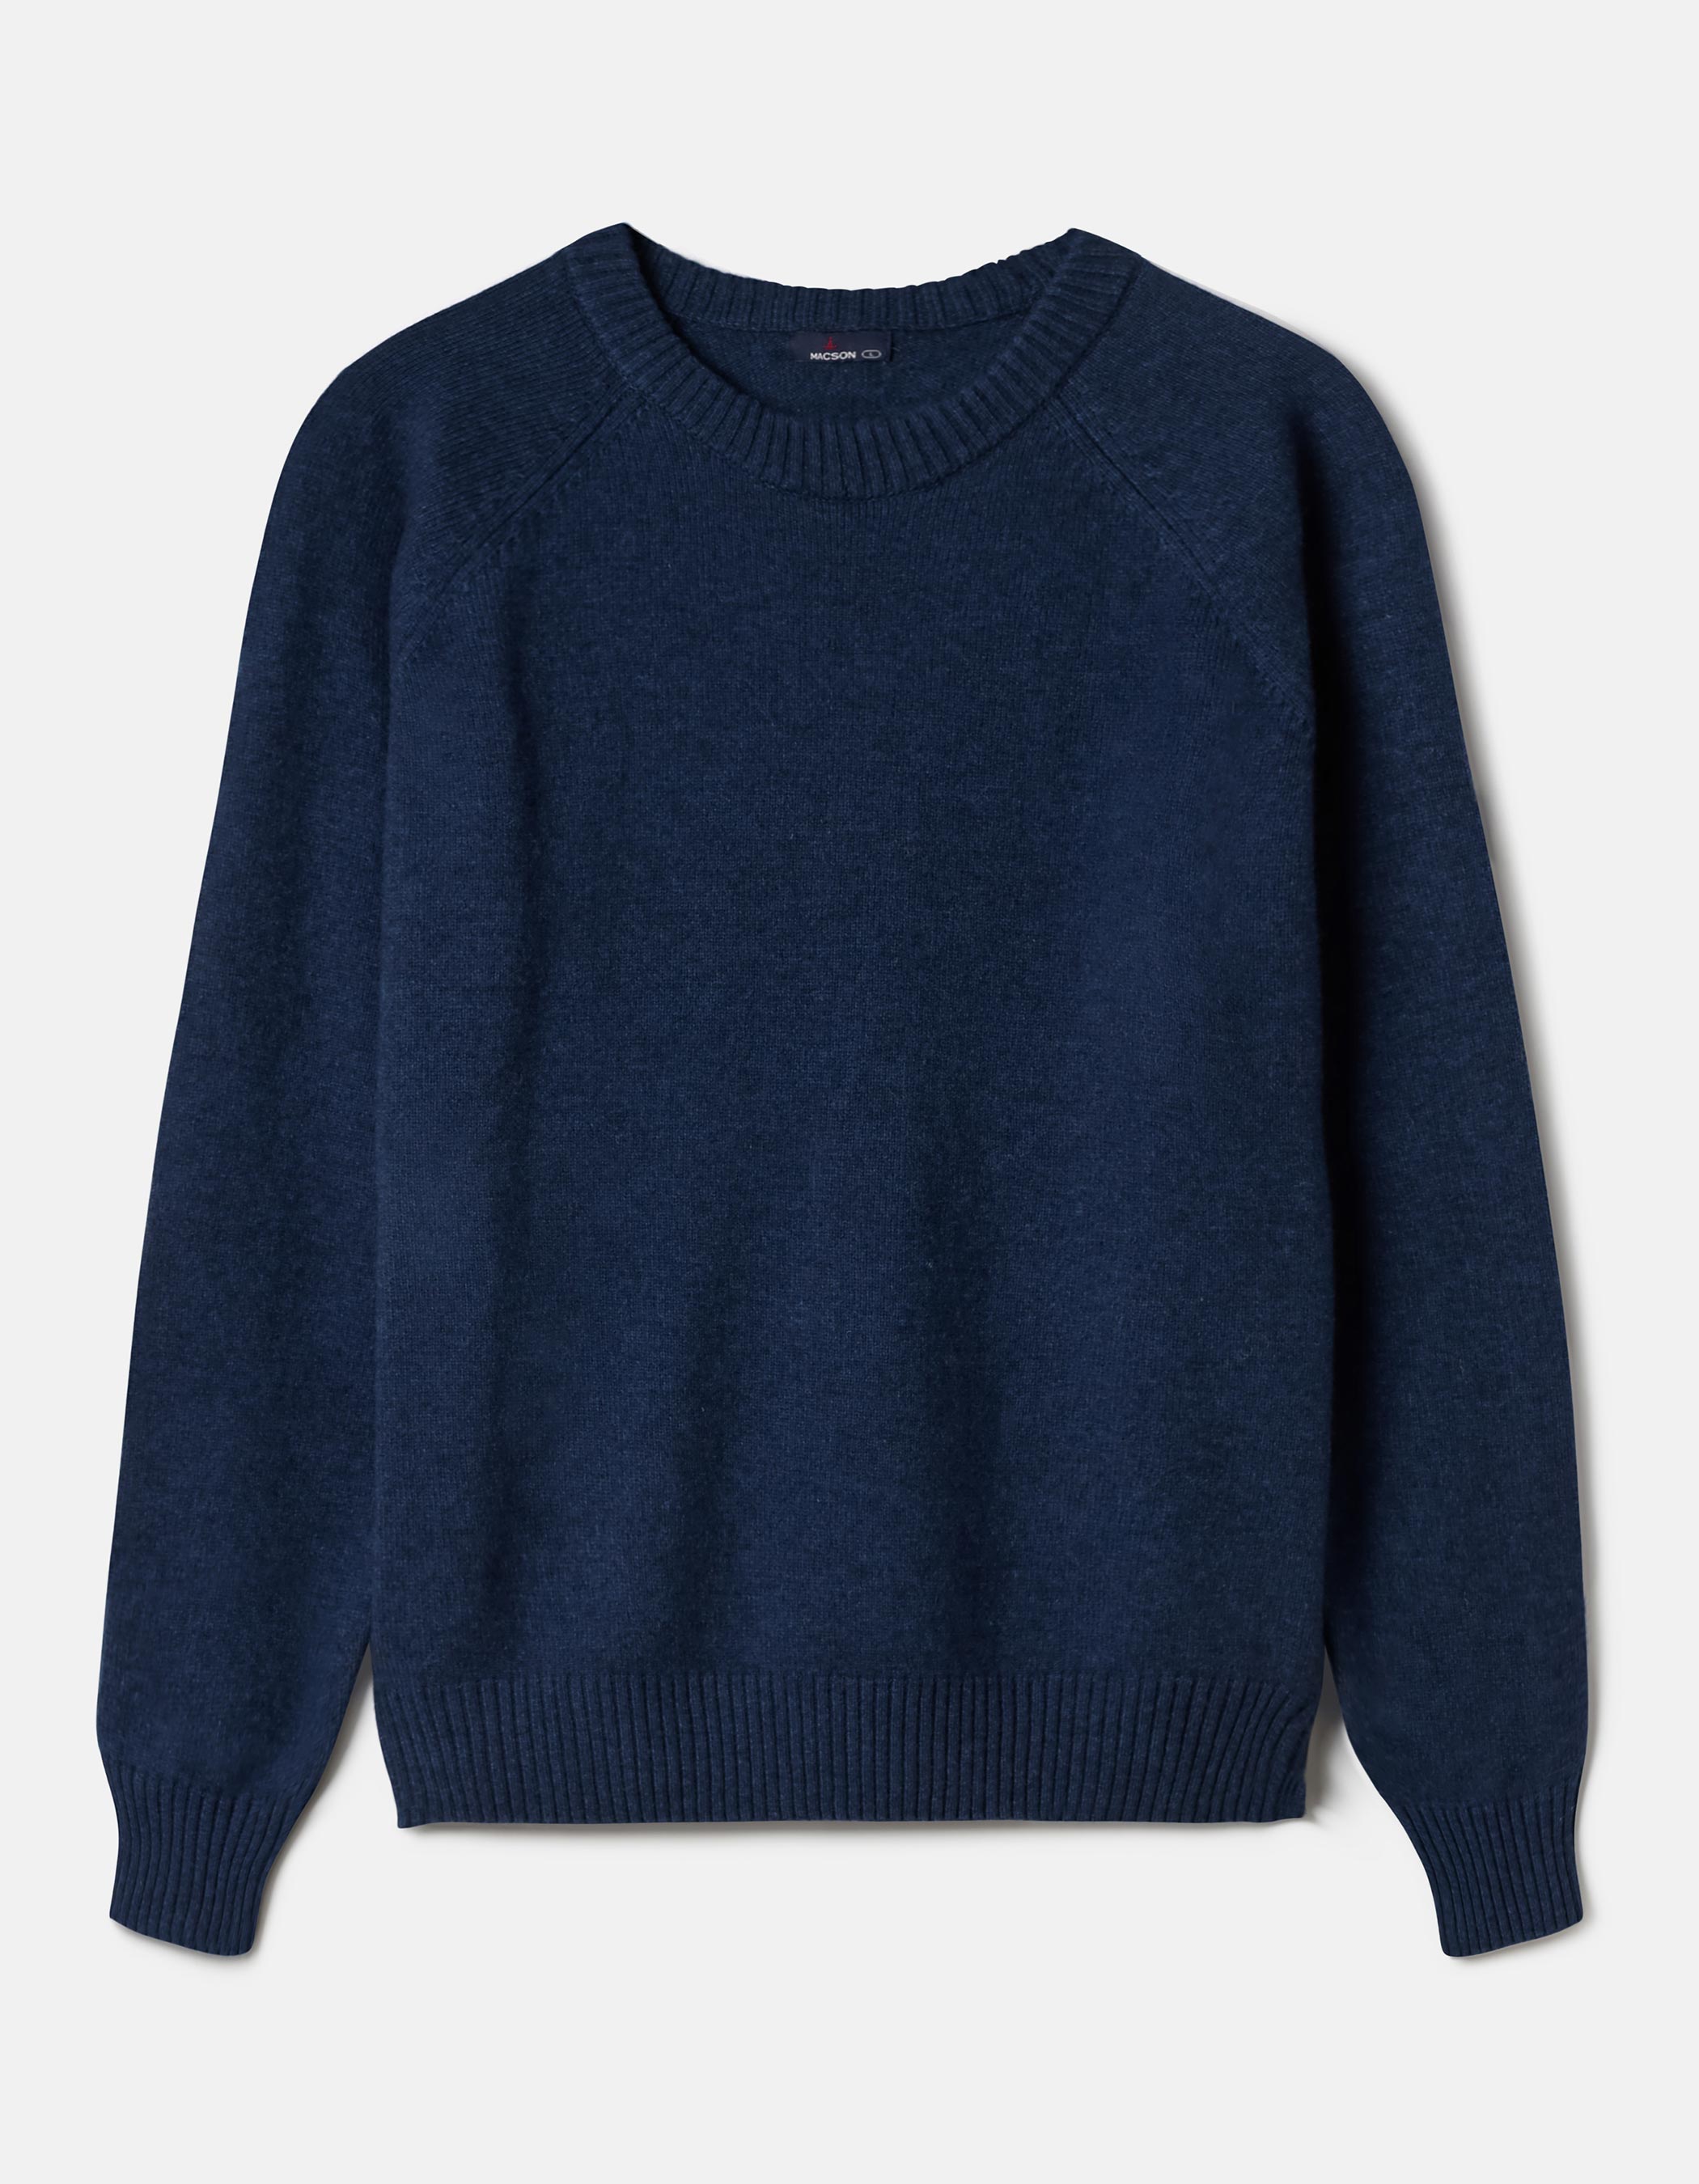 Suéter texturizado em lã